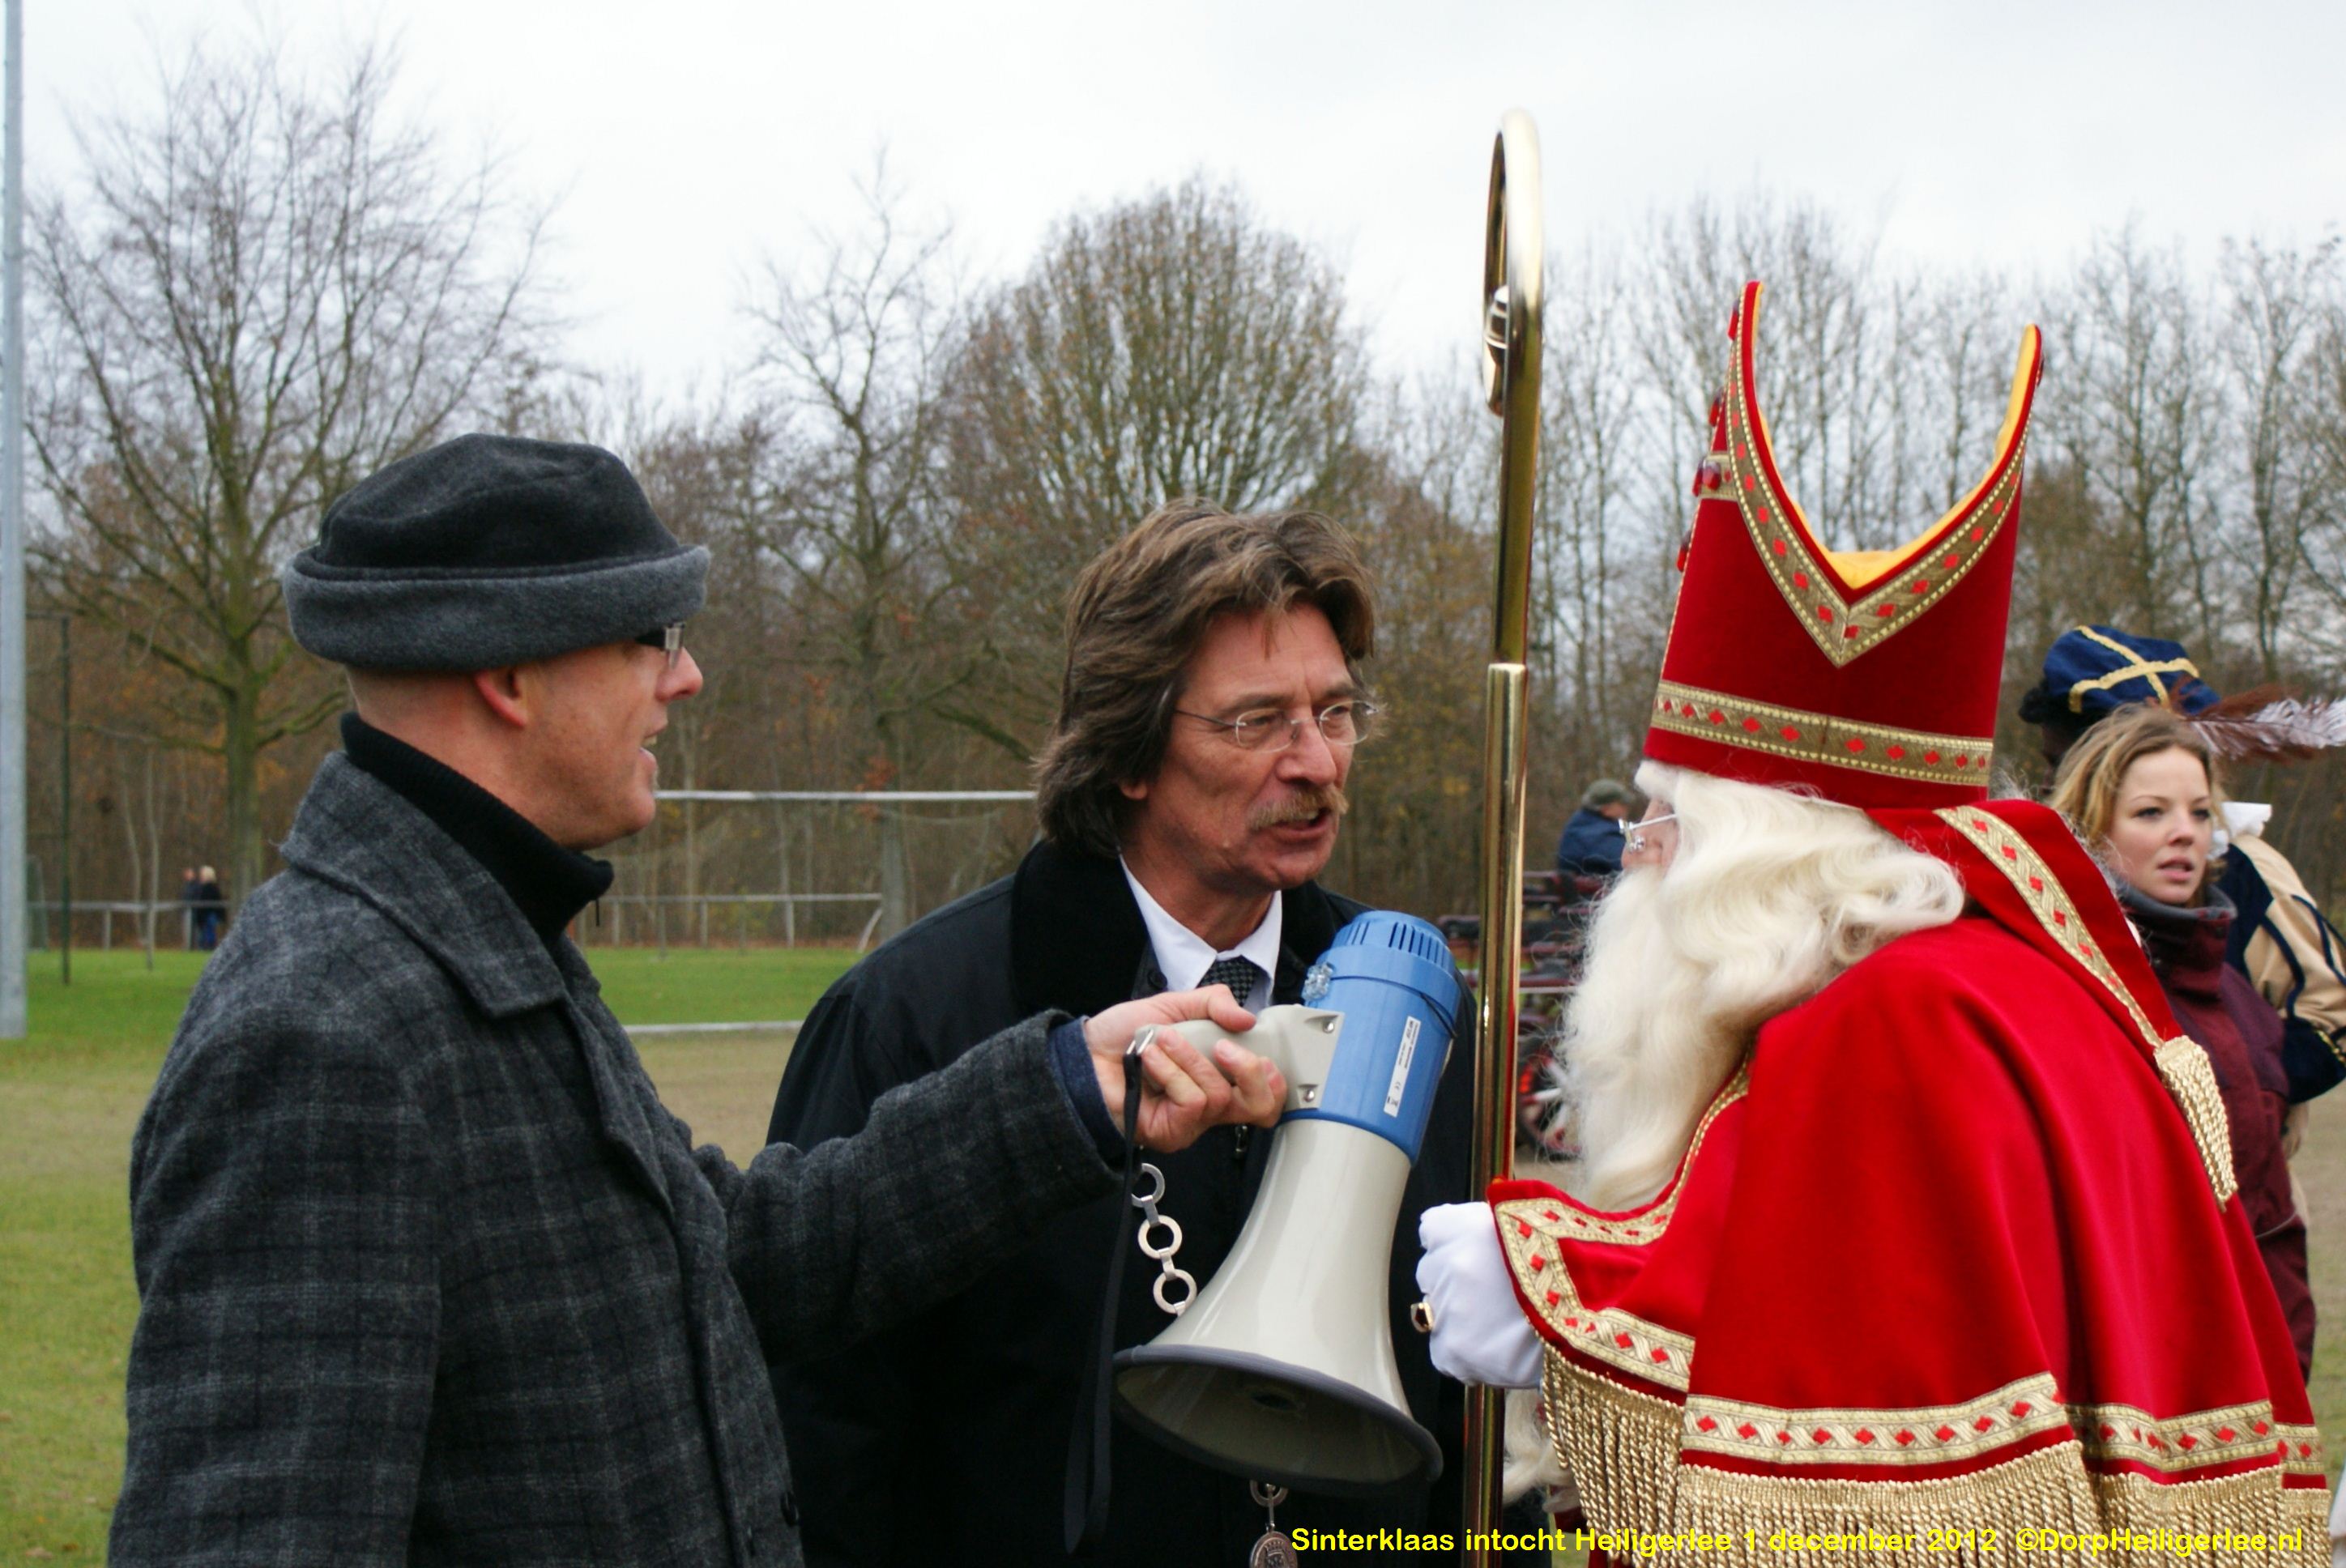 Sinterklaas intocht Heiligerlee 2012 - deel 2